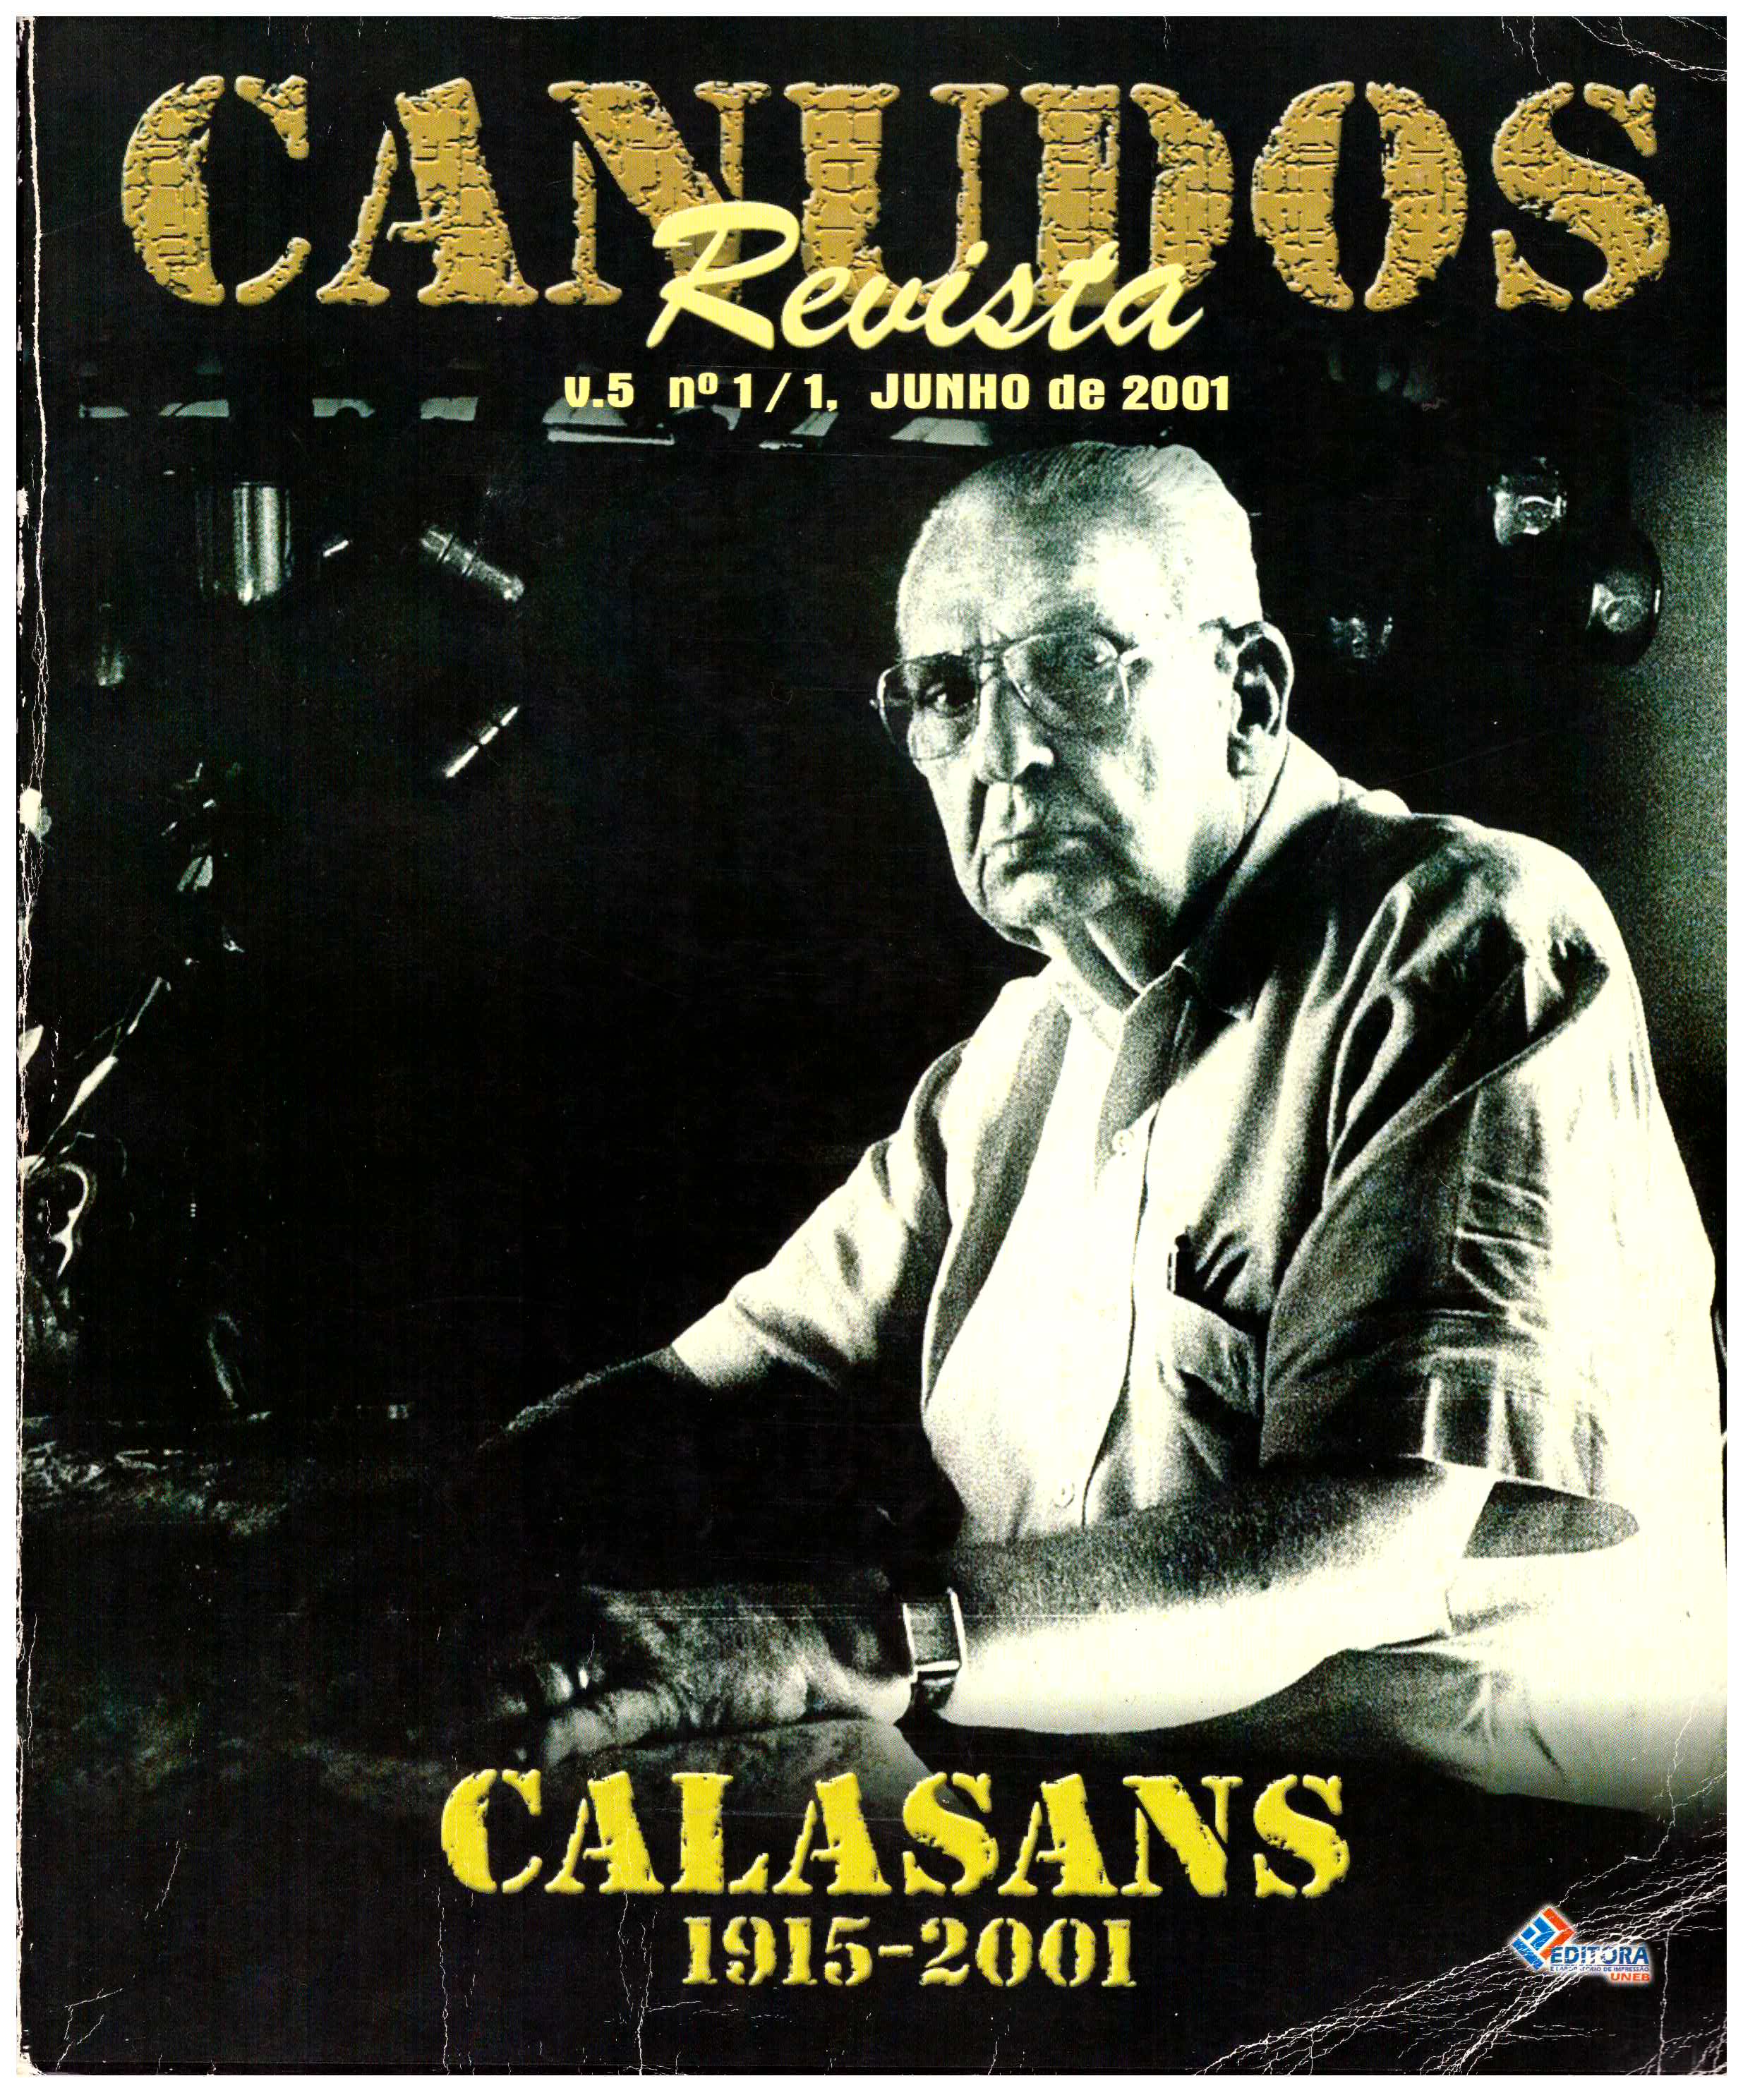 					Visualizar v. 5 n. 1 (2001): CALASANS 1915-2001
				